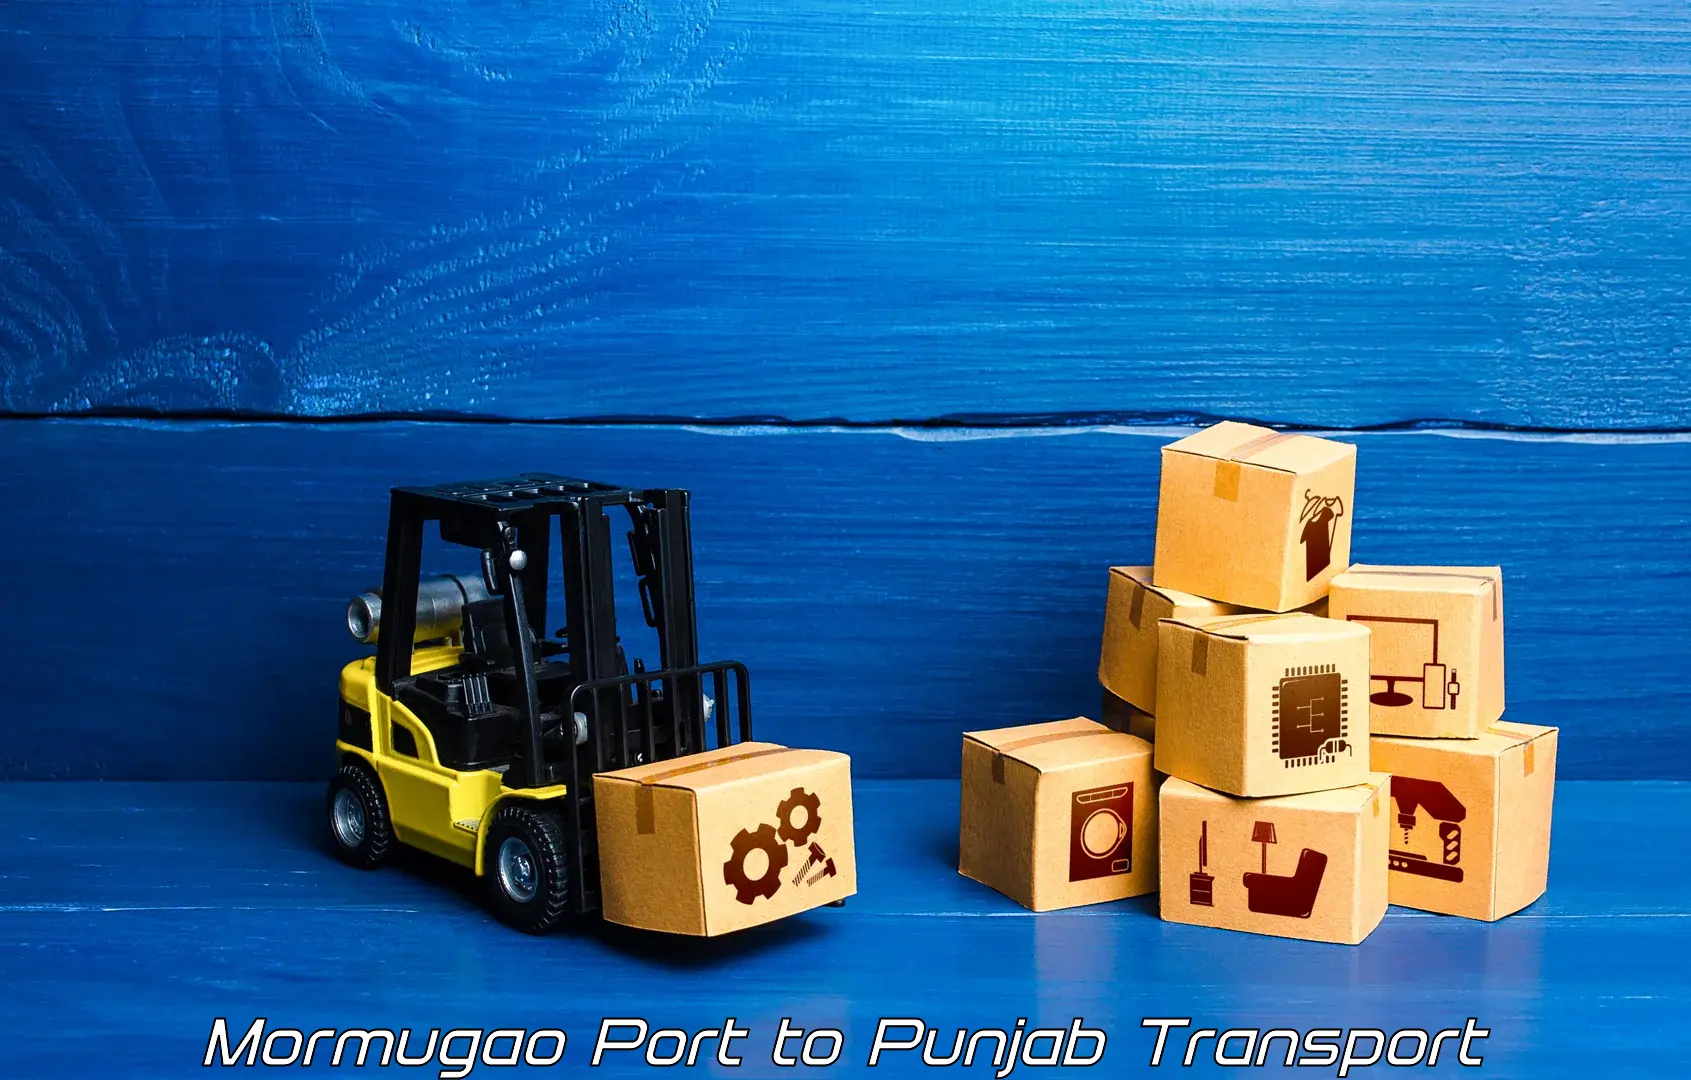 Container transportation services Mormugao Port to Dinanagar